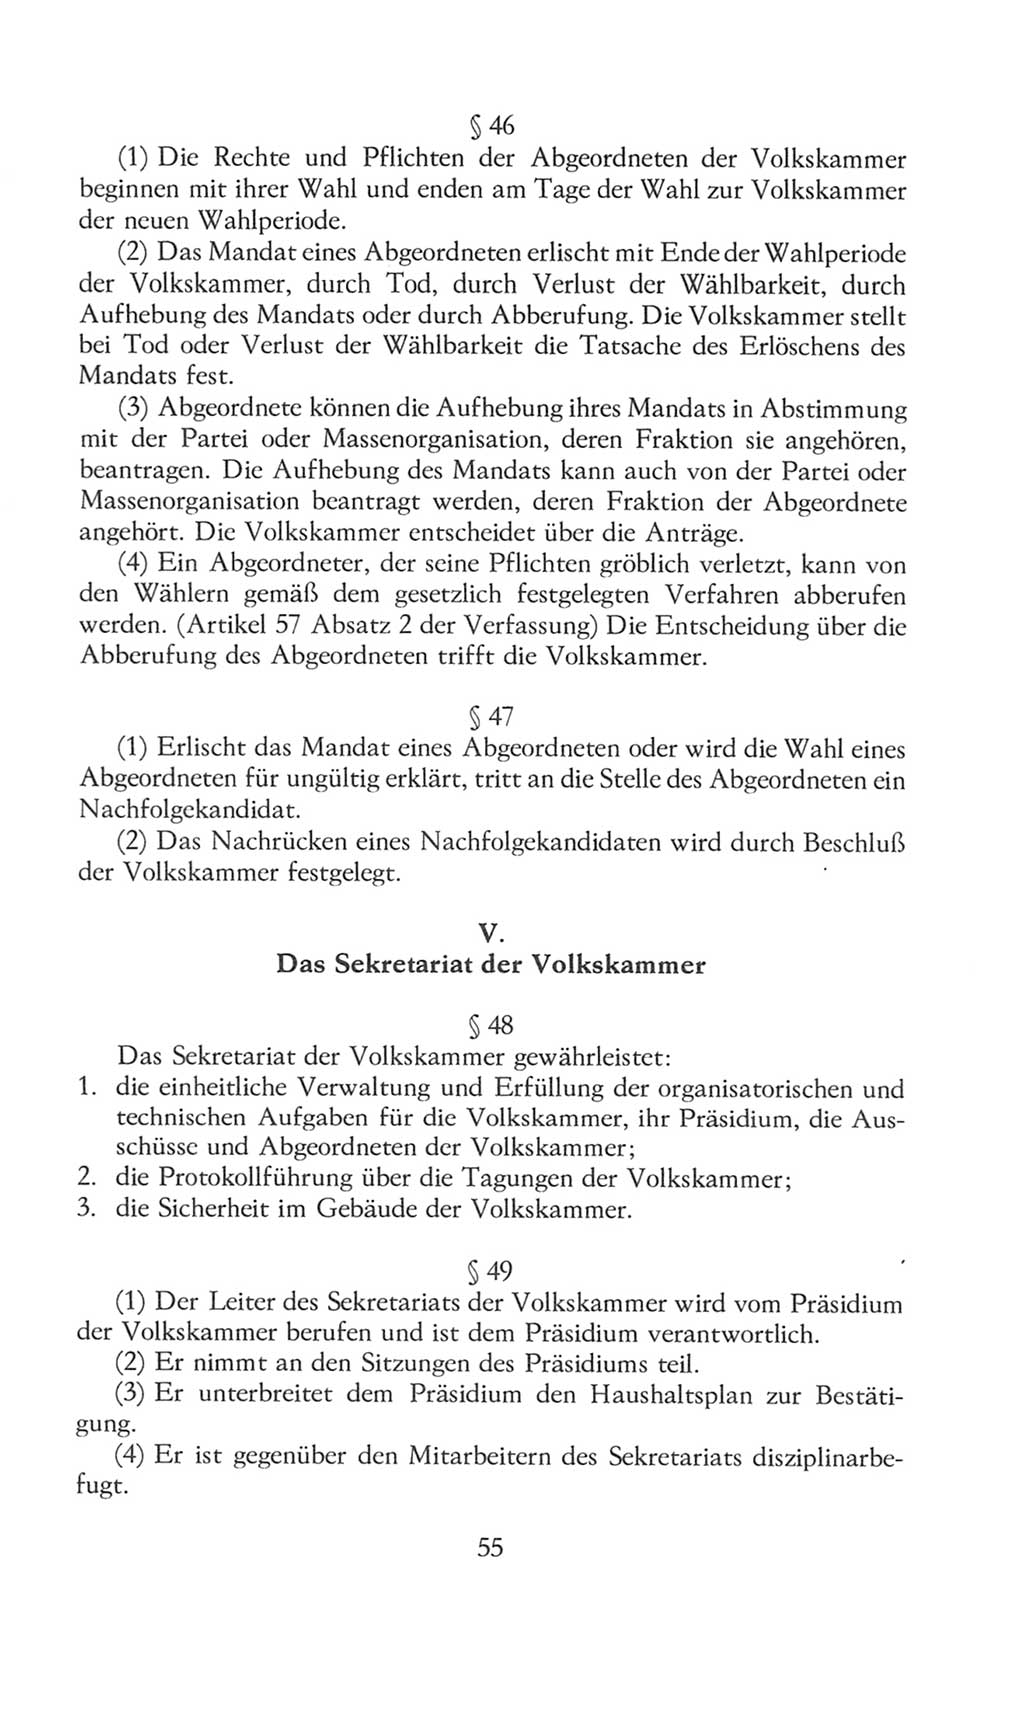 Volkskammer (VK) der Deutschen Demokratischen Republik (DDR), 8. Wahlperiode 1981-1986, Seite 55 (VK. DDR 8. WP. 1981-1986, S. 55)